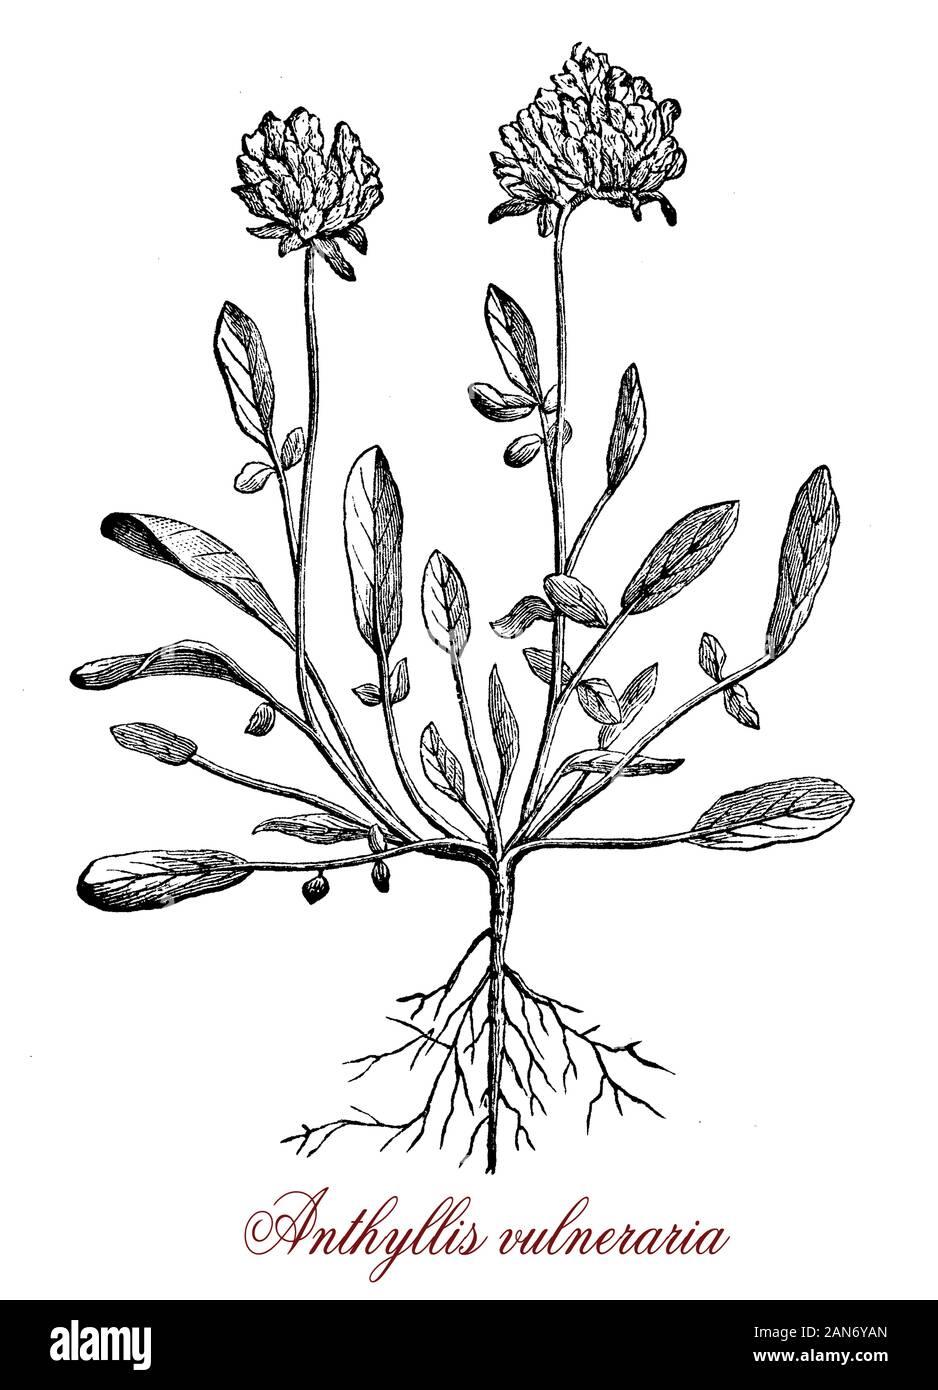 Anthyllis vulneraria kidneyvetch común o planta medicinal originaria de Europa, el nombre significa "herida sanador" en América.Las flores son esféricos con pétalos amarillos Foto de stock